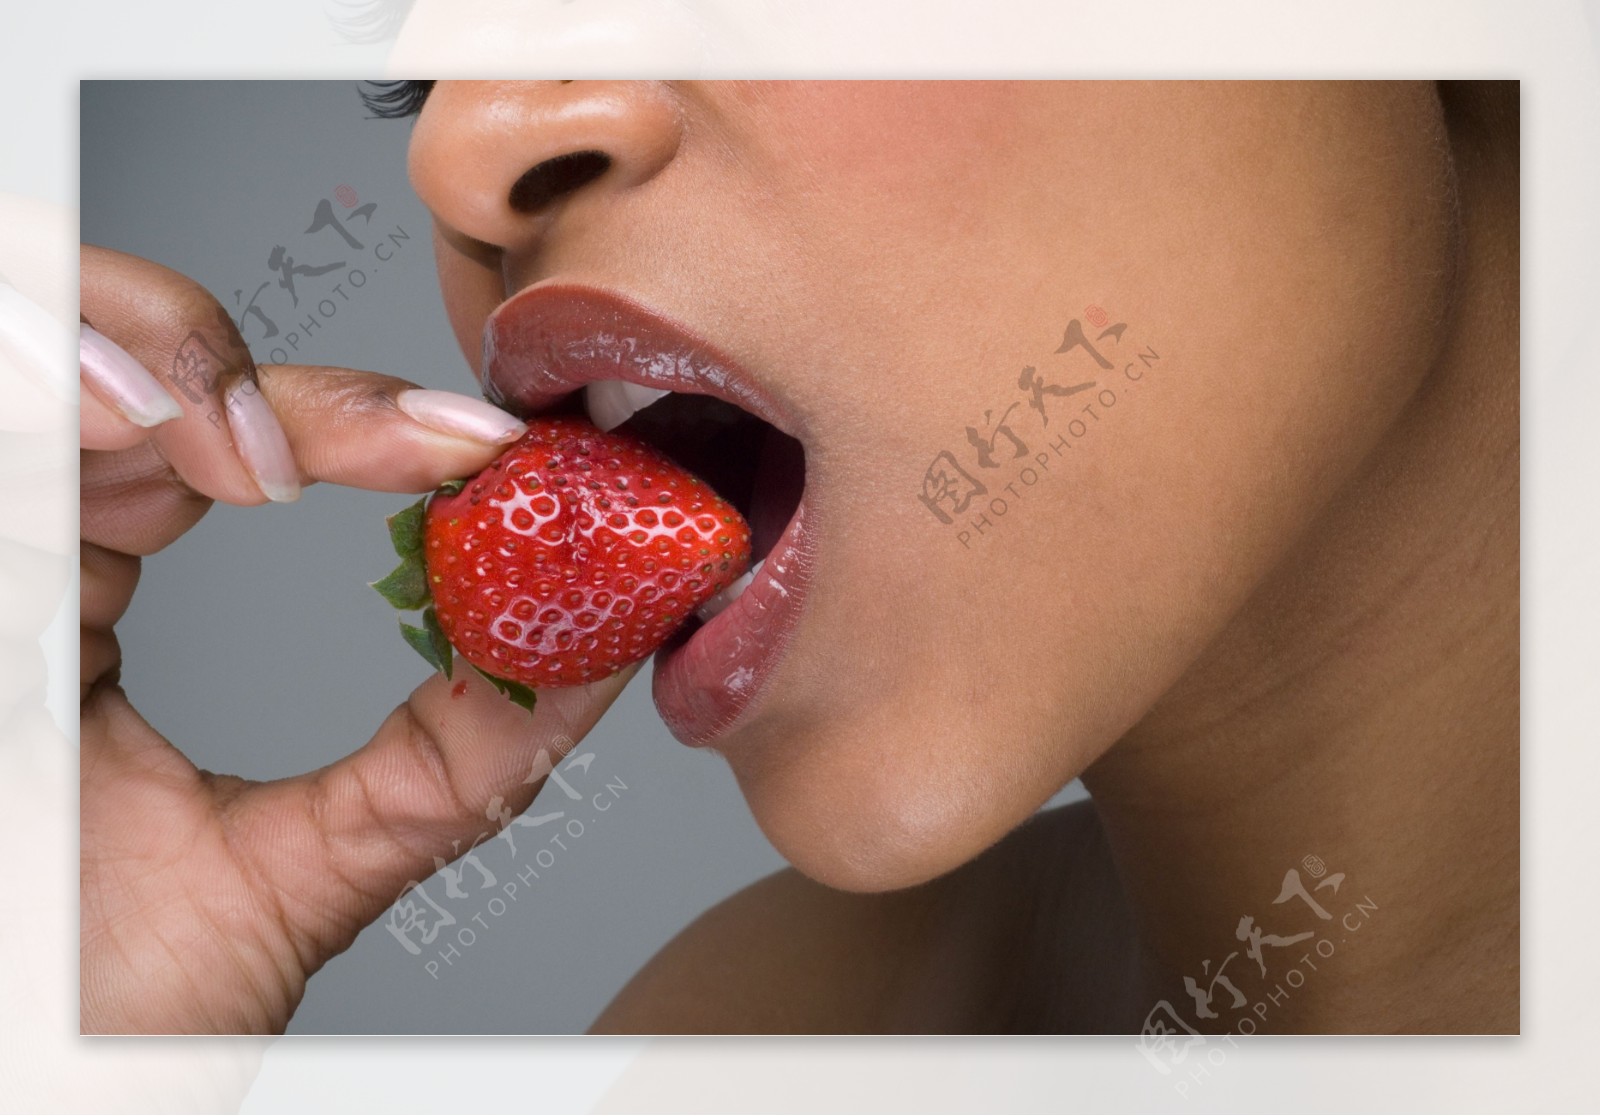 吃草莓的美女图片